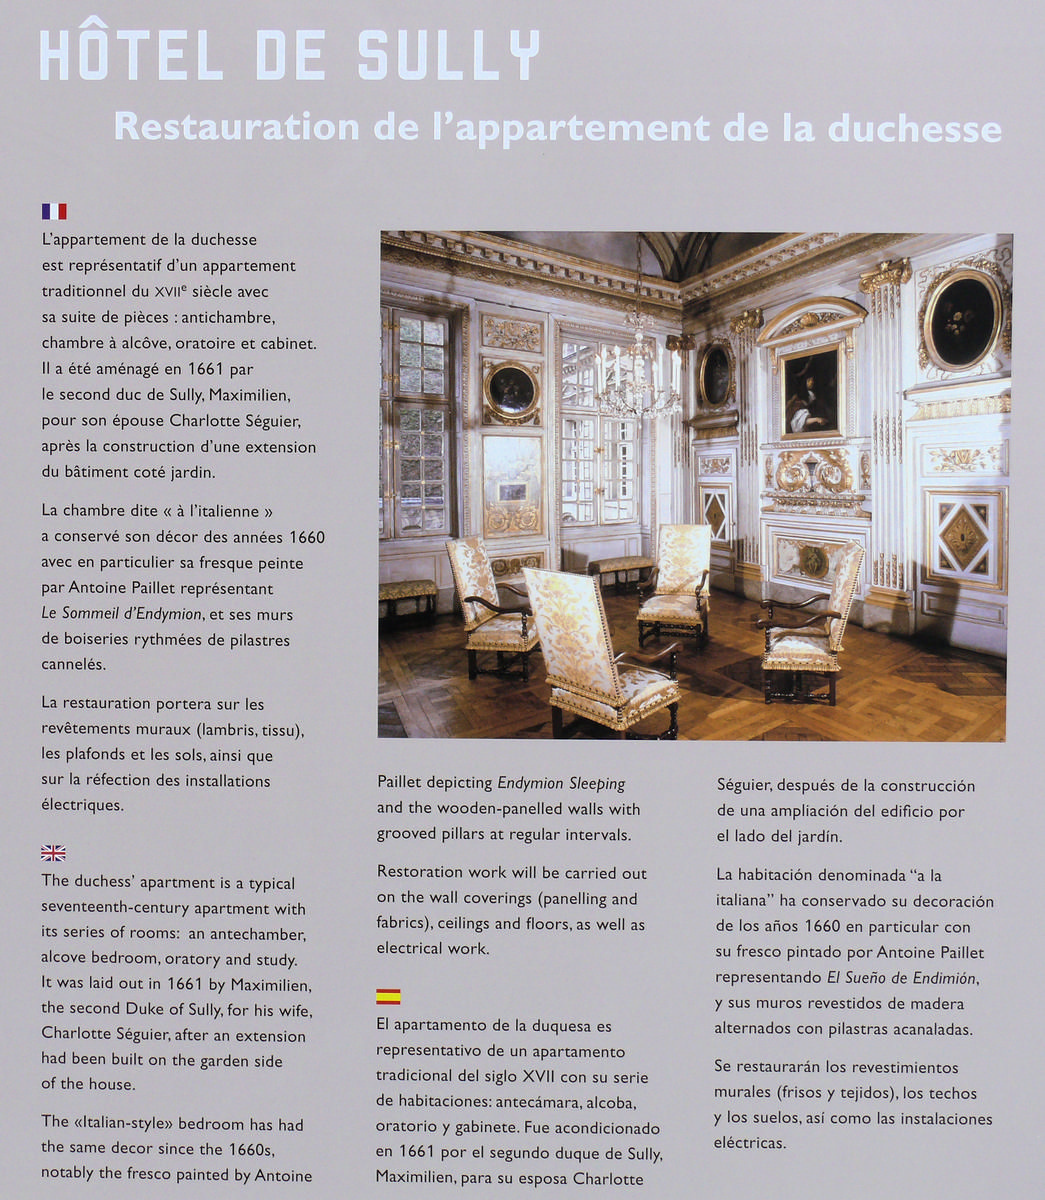 Paris 4ème arrondissement - Hôtel de Sully - Panneau sur la restauration de l'appartement de la duchesse Paris 4 ème arrondissement - Hôtel de Sully - Panneau sur la restauration de l'appartement de la duchesse